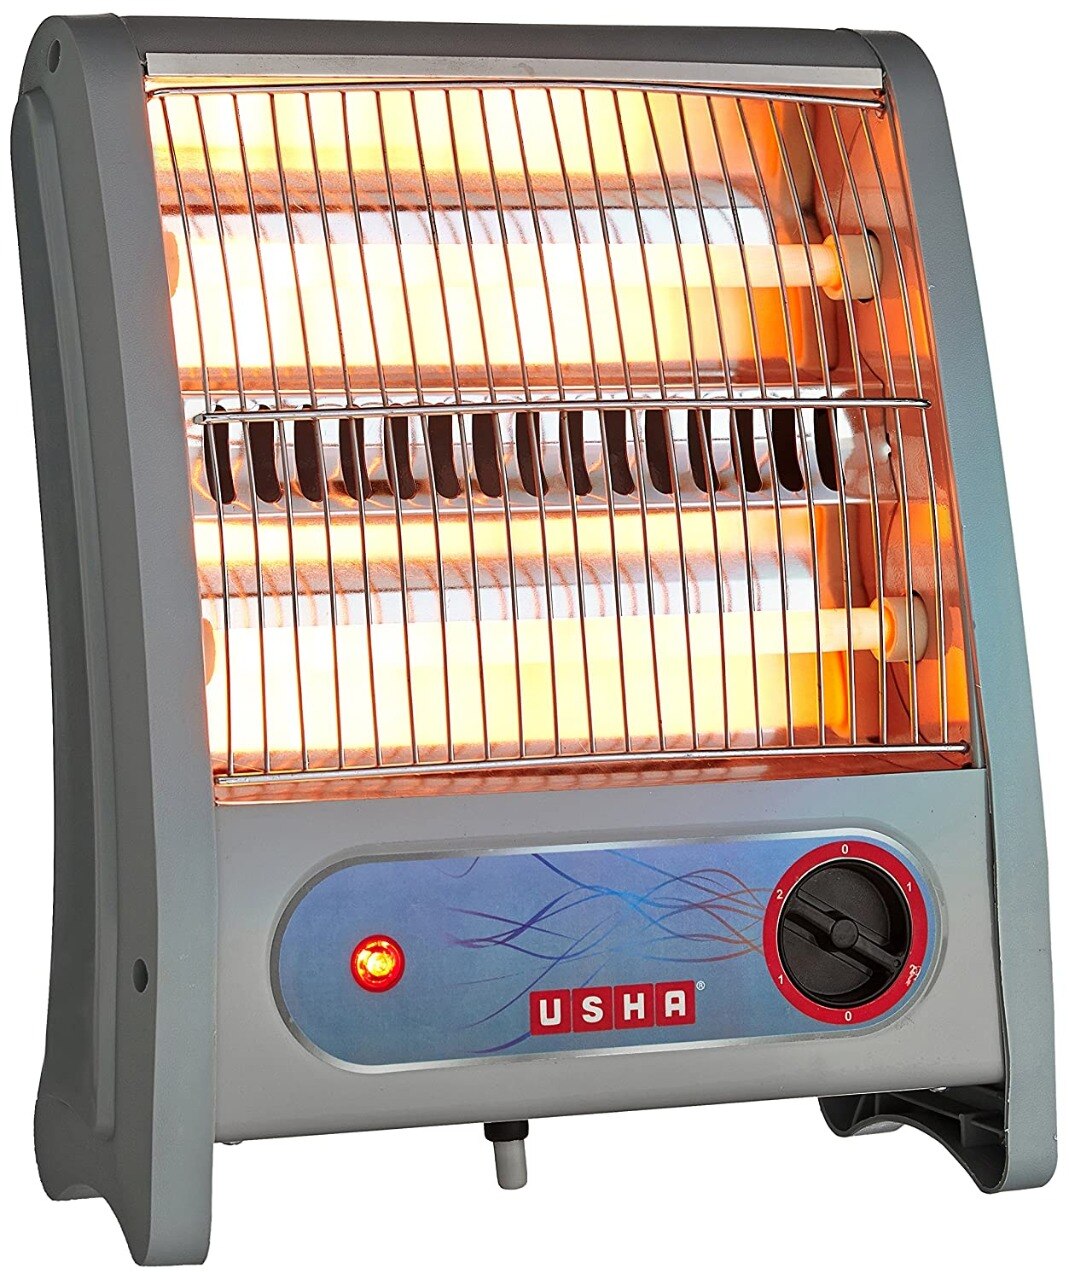 Amazon Sale: तेज ठंड से बचाने वाले कम कीमत के Heater, डील में मिल रहे हैं 700 रुपये से भी कम में